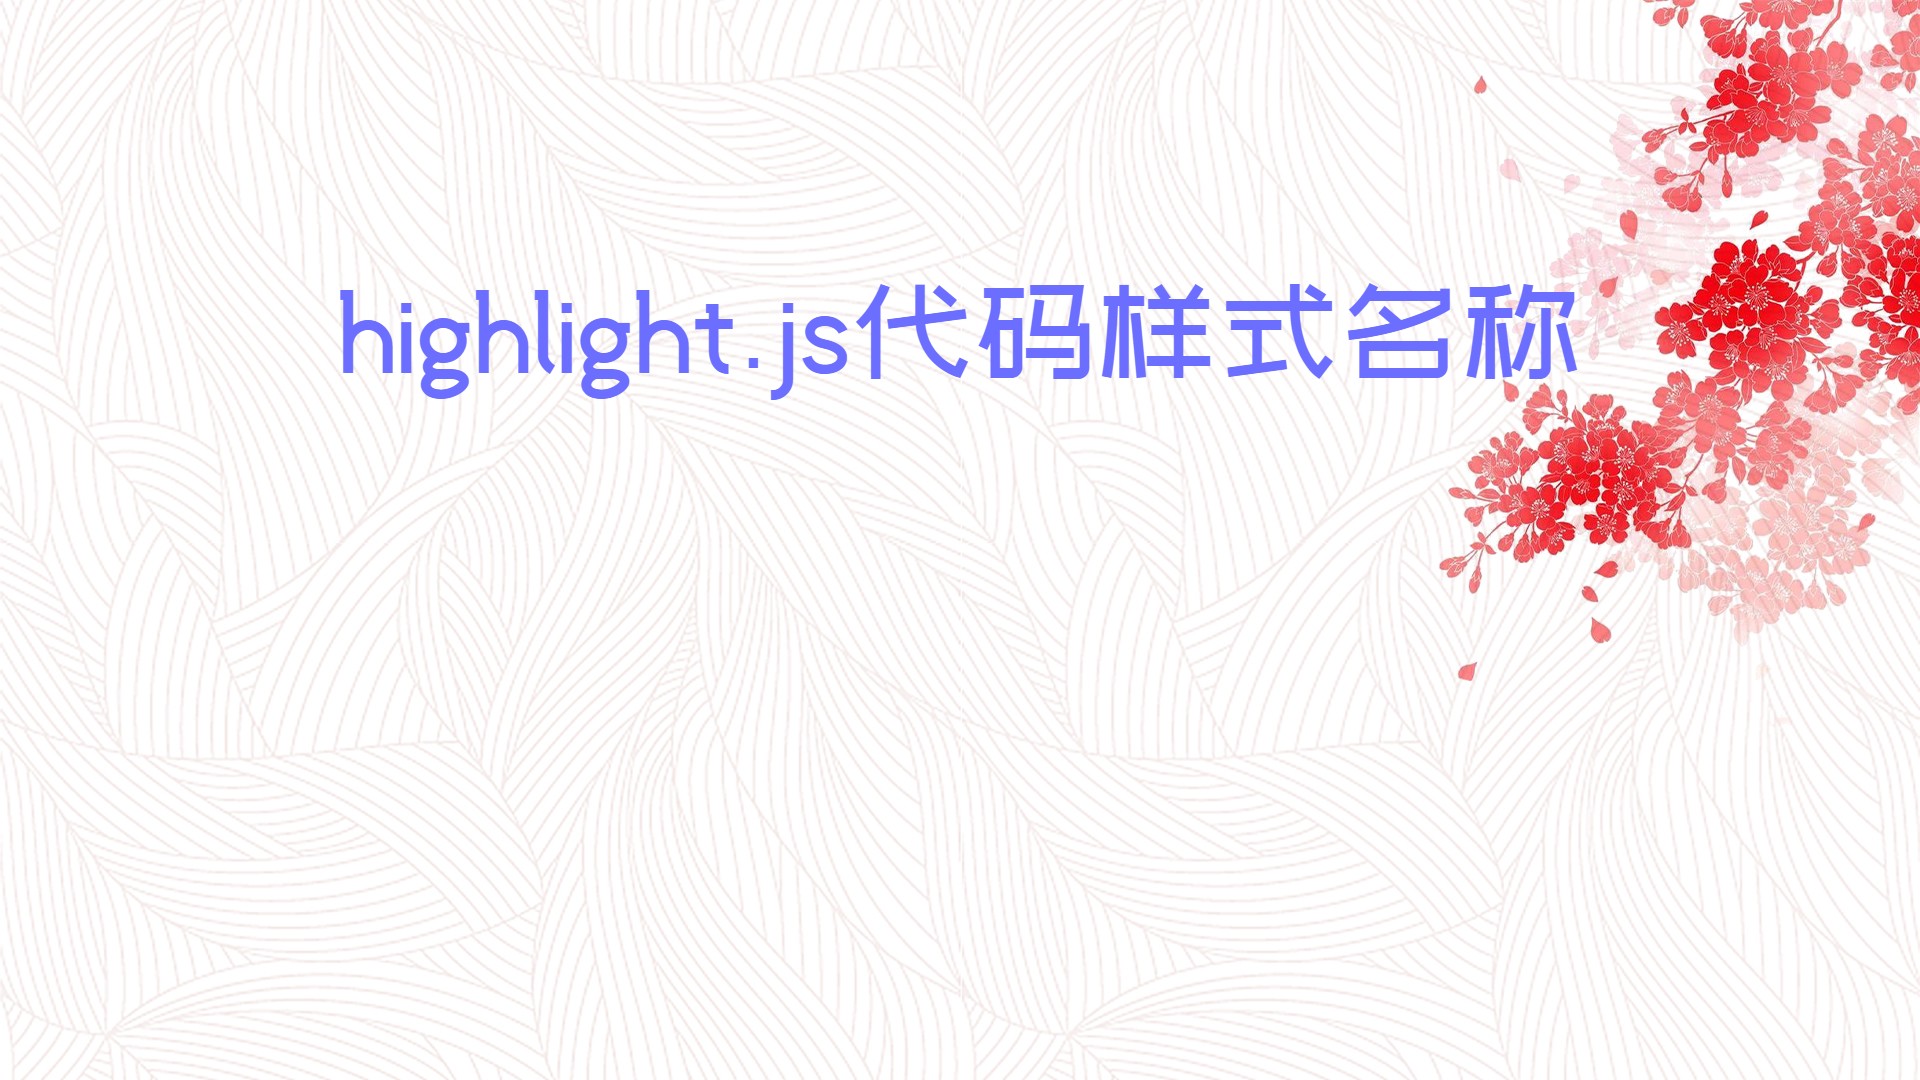 highlight.js代码样式名称